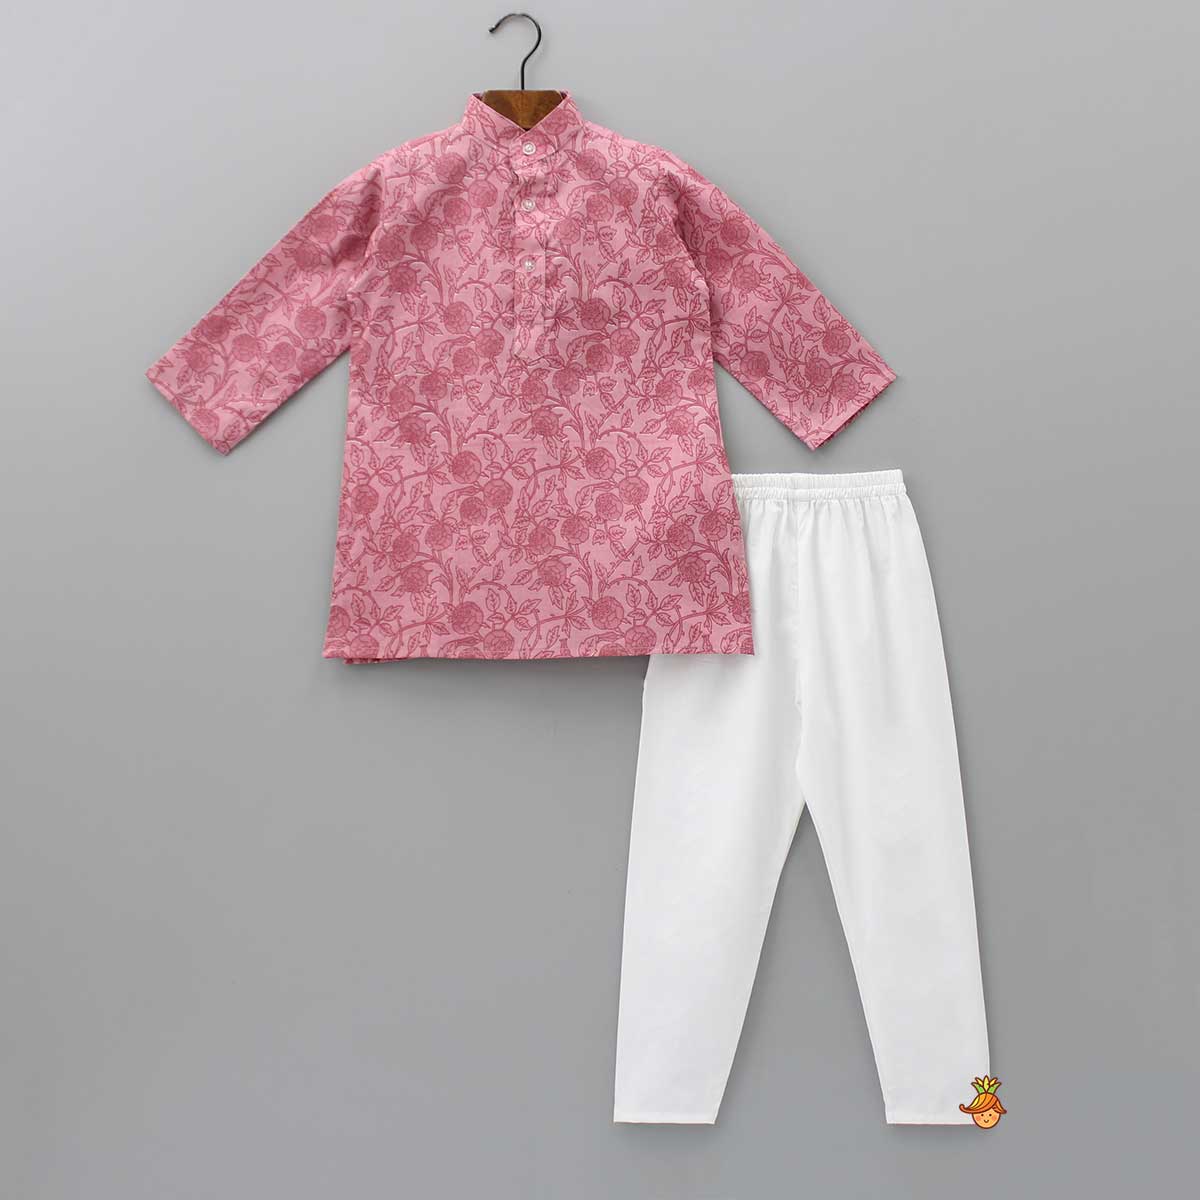 Printed Pink Kurta With Wavy Embroidered Jacket And Churidar